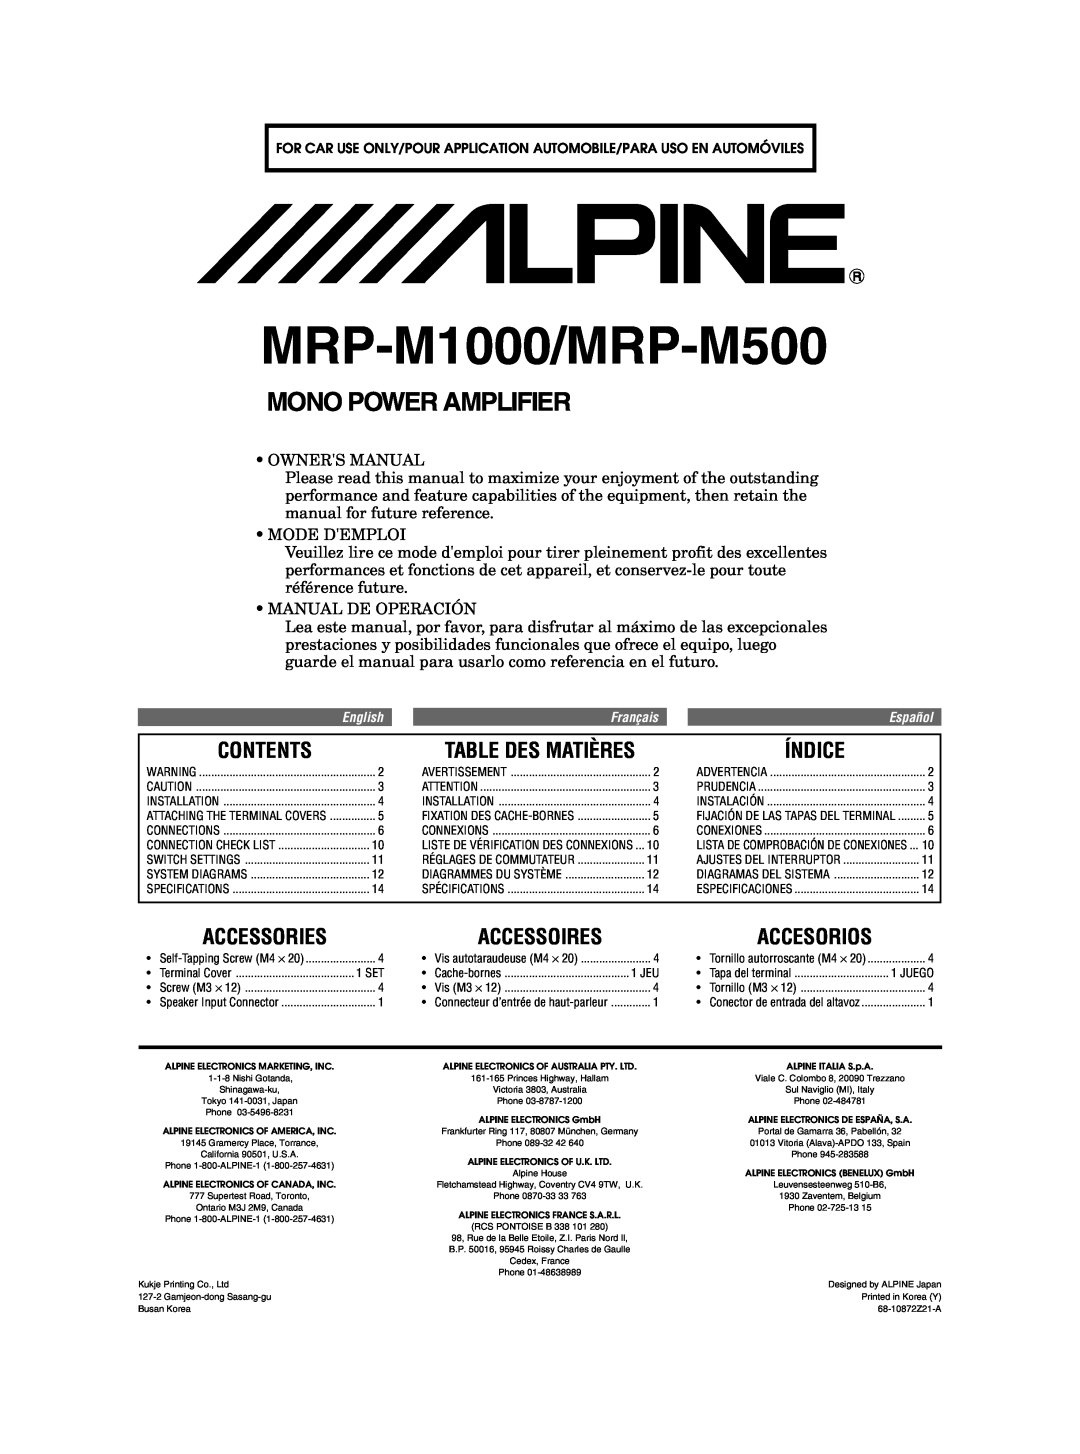 Alpine MRD-M500 owner manual Contents, Índice, Accessories, Accesorios, Table Des Matières, Accessoires, Mode Demploi 